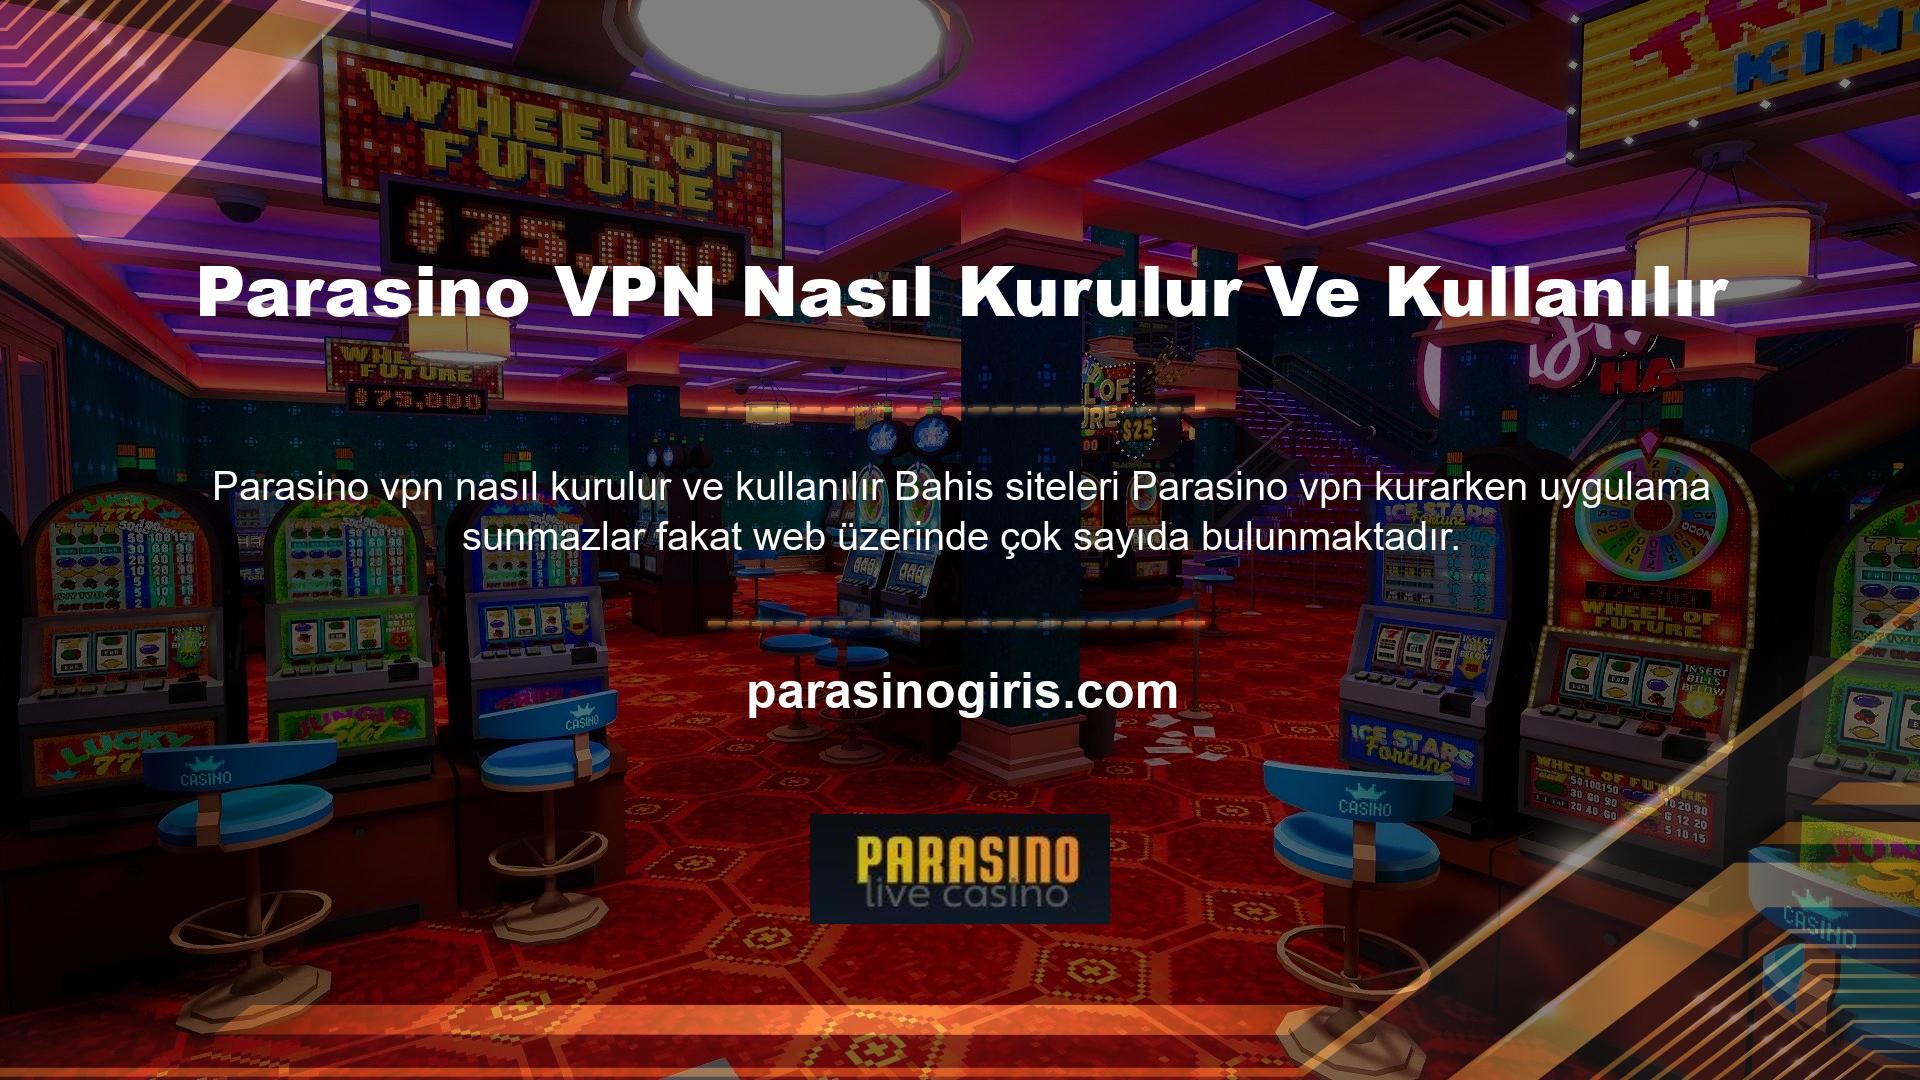 Her durumda canlı casino siteleri VPN uygulamaları sunmaz